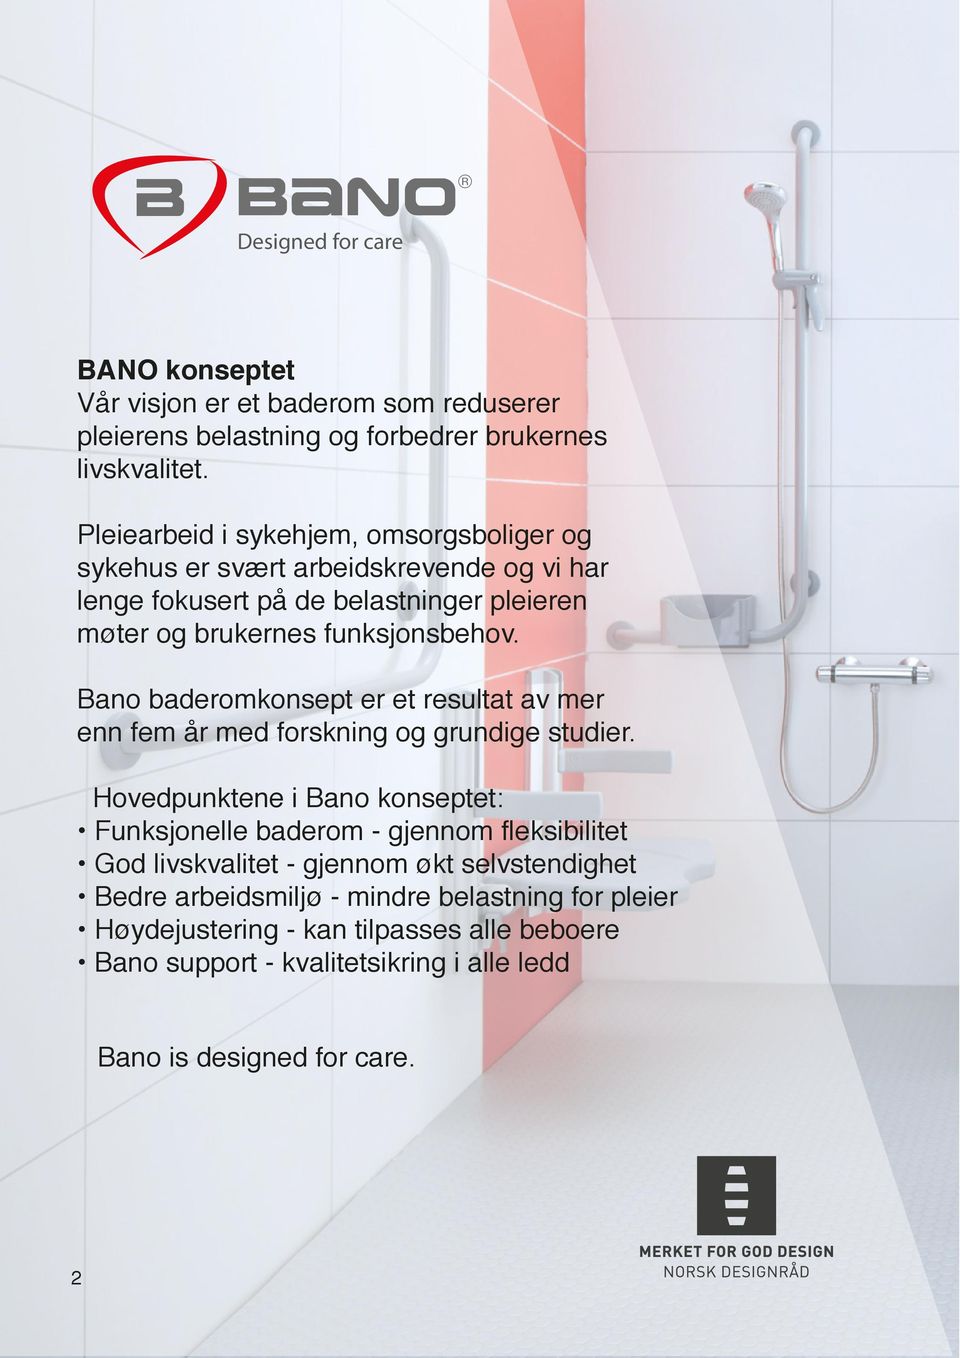 Bano baderomkonsept er et resultat av mer enn fem år med forskning og grundige studier.